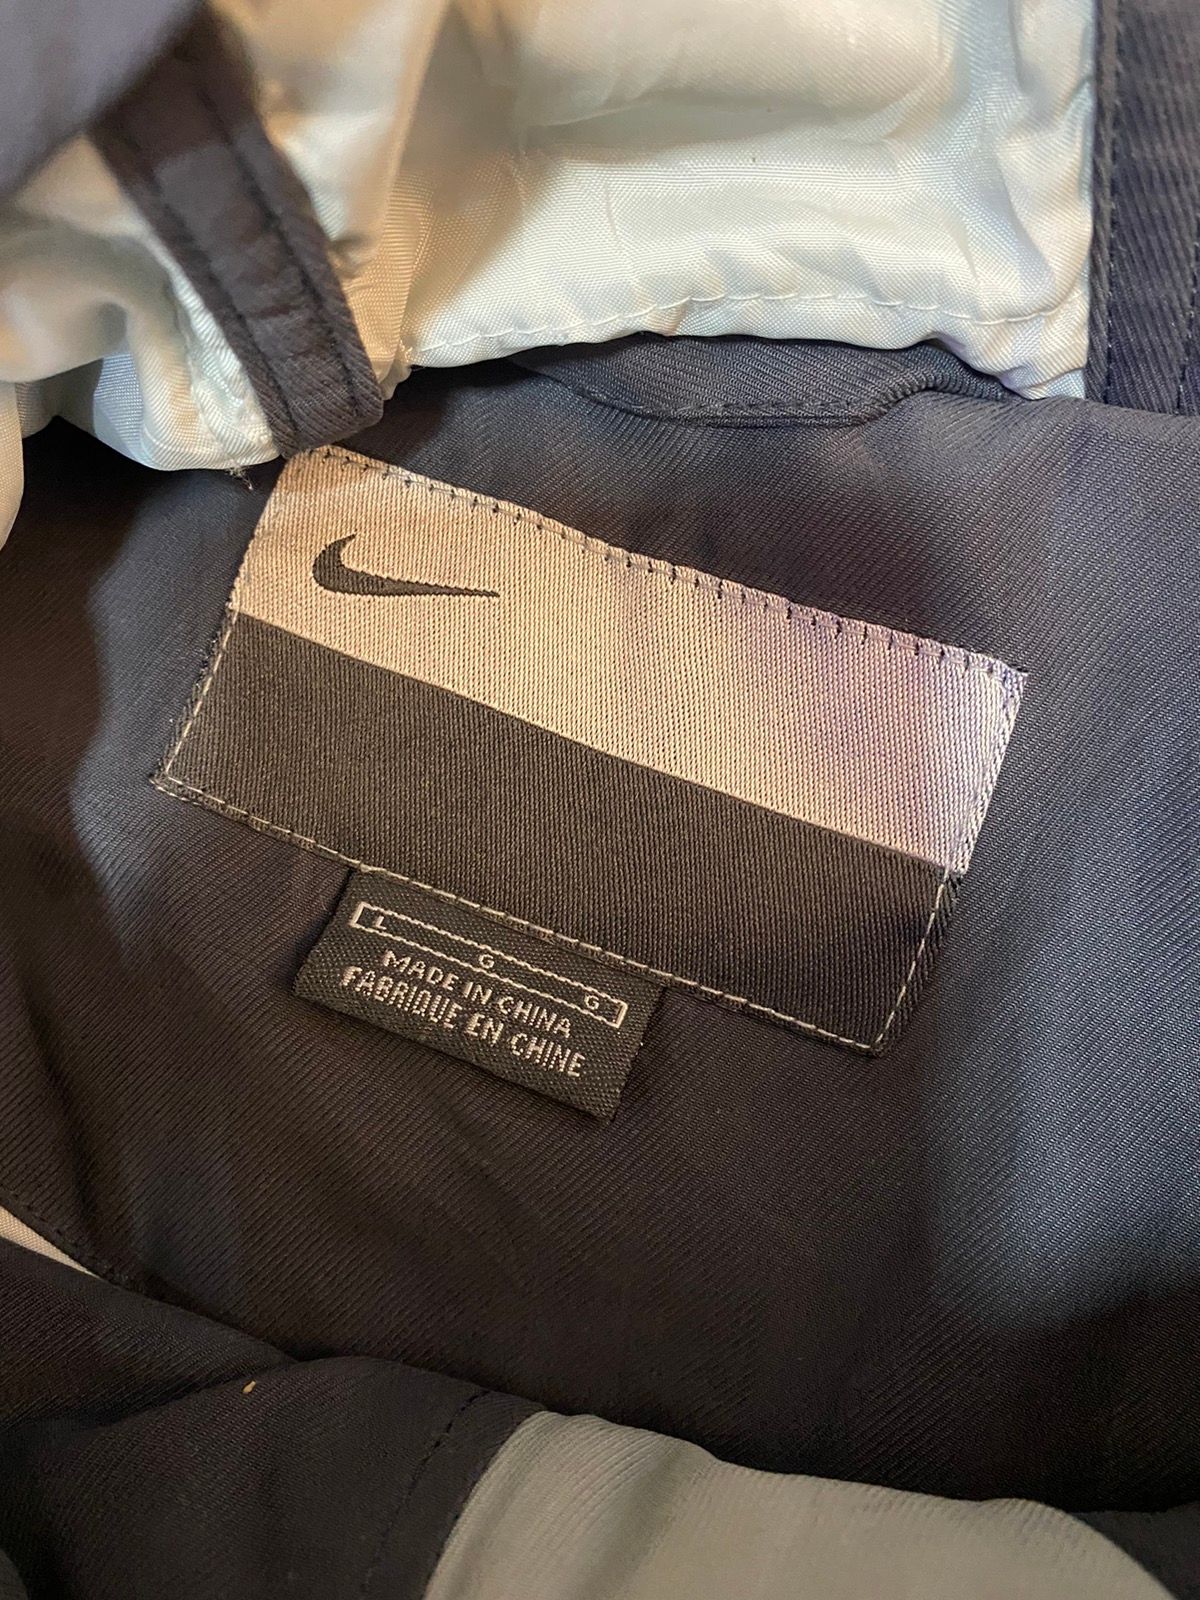 Nike Pullover Anorak Hoodie Jacket Nice Design - 9